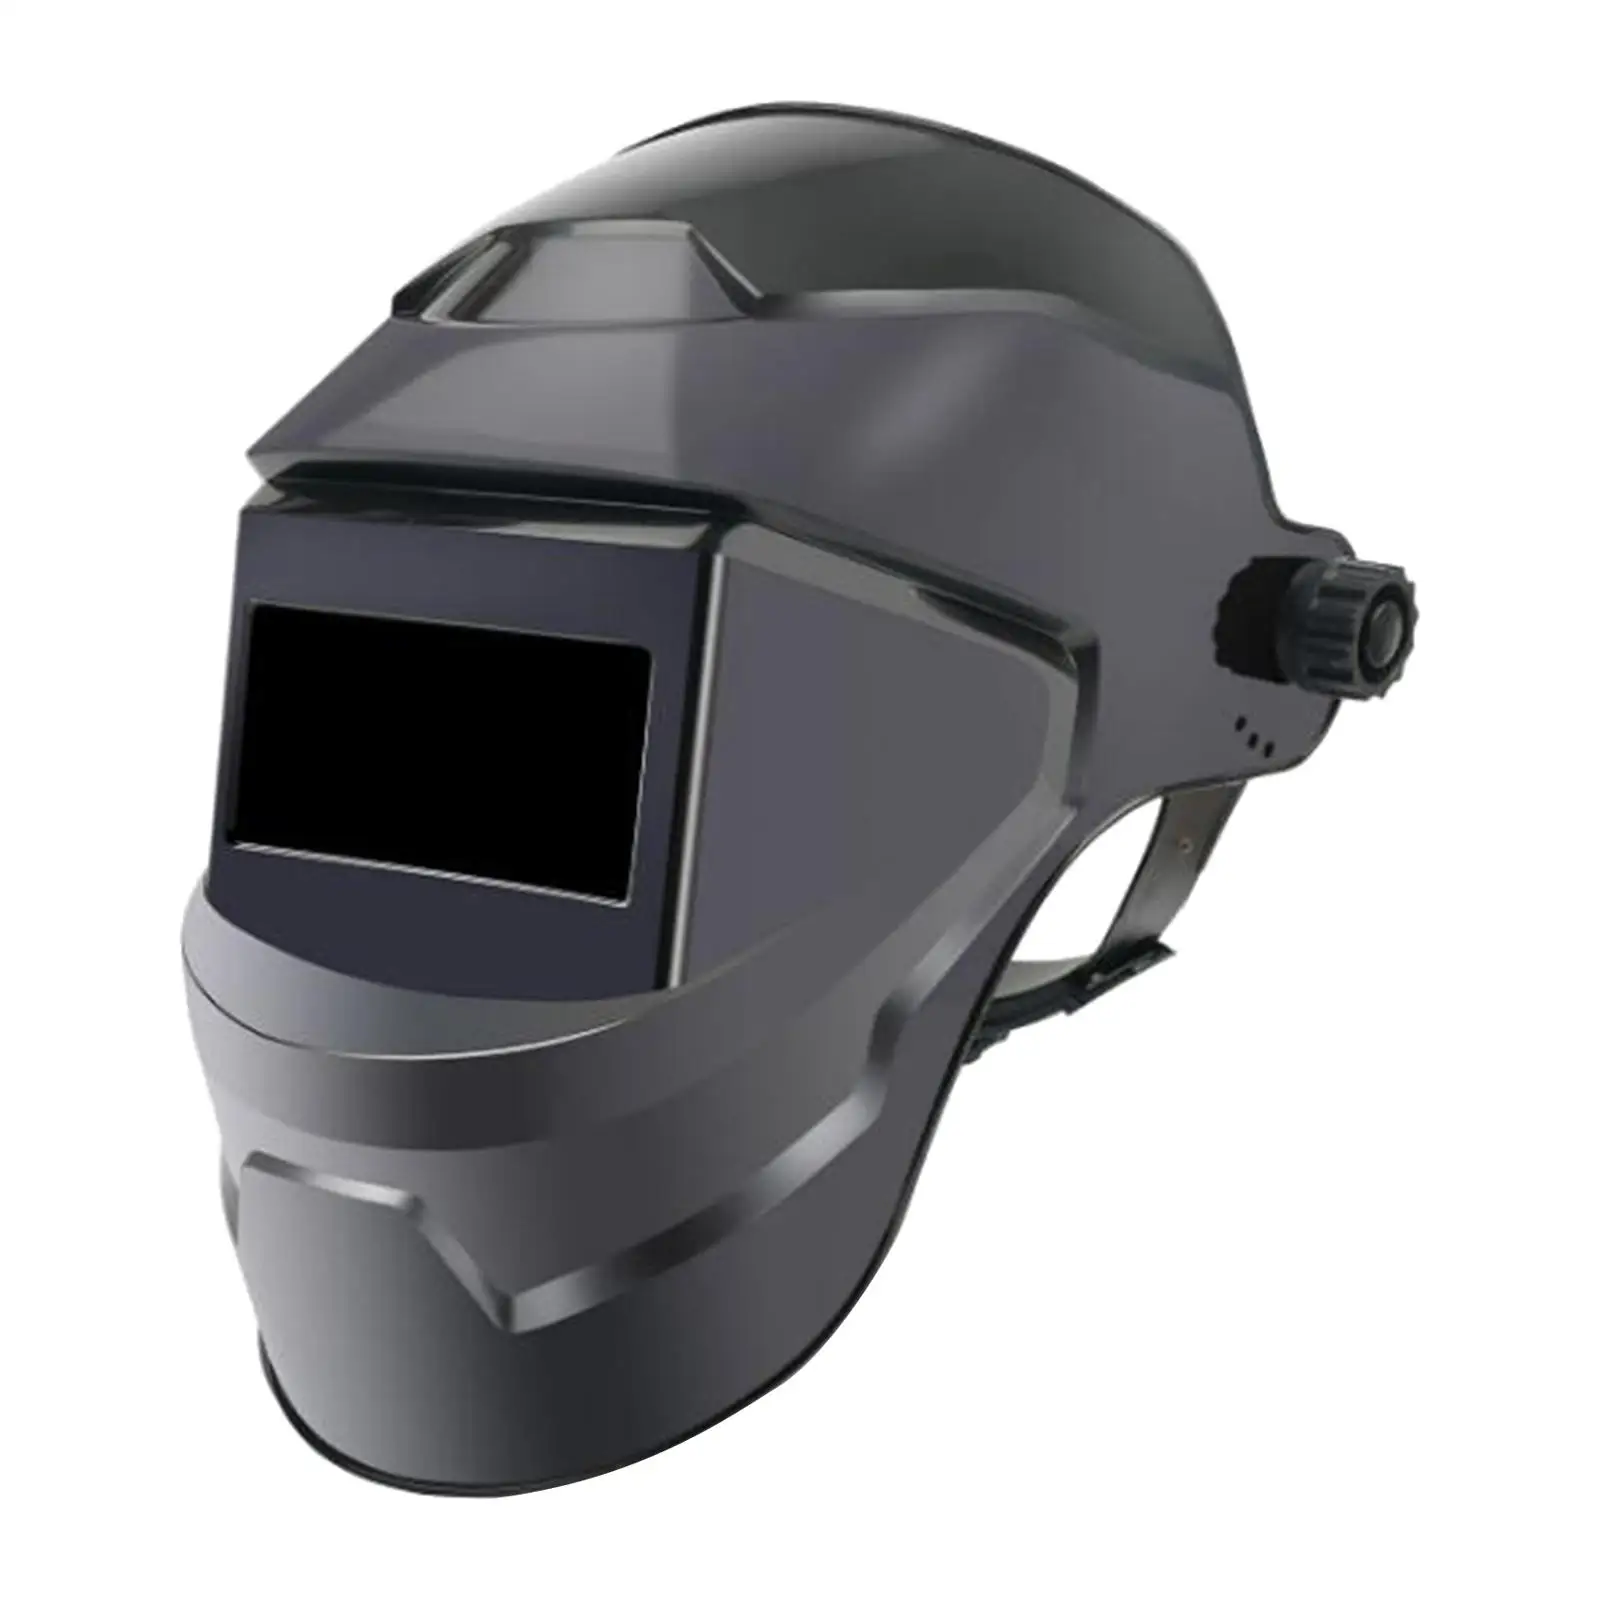 Electrical Welding Caps Thickened Forehead Sponge Mask Welder Helmet Welding Accessories Welding for Weld Grind Cut